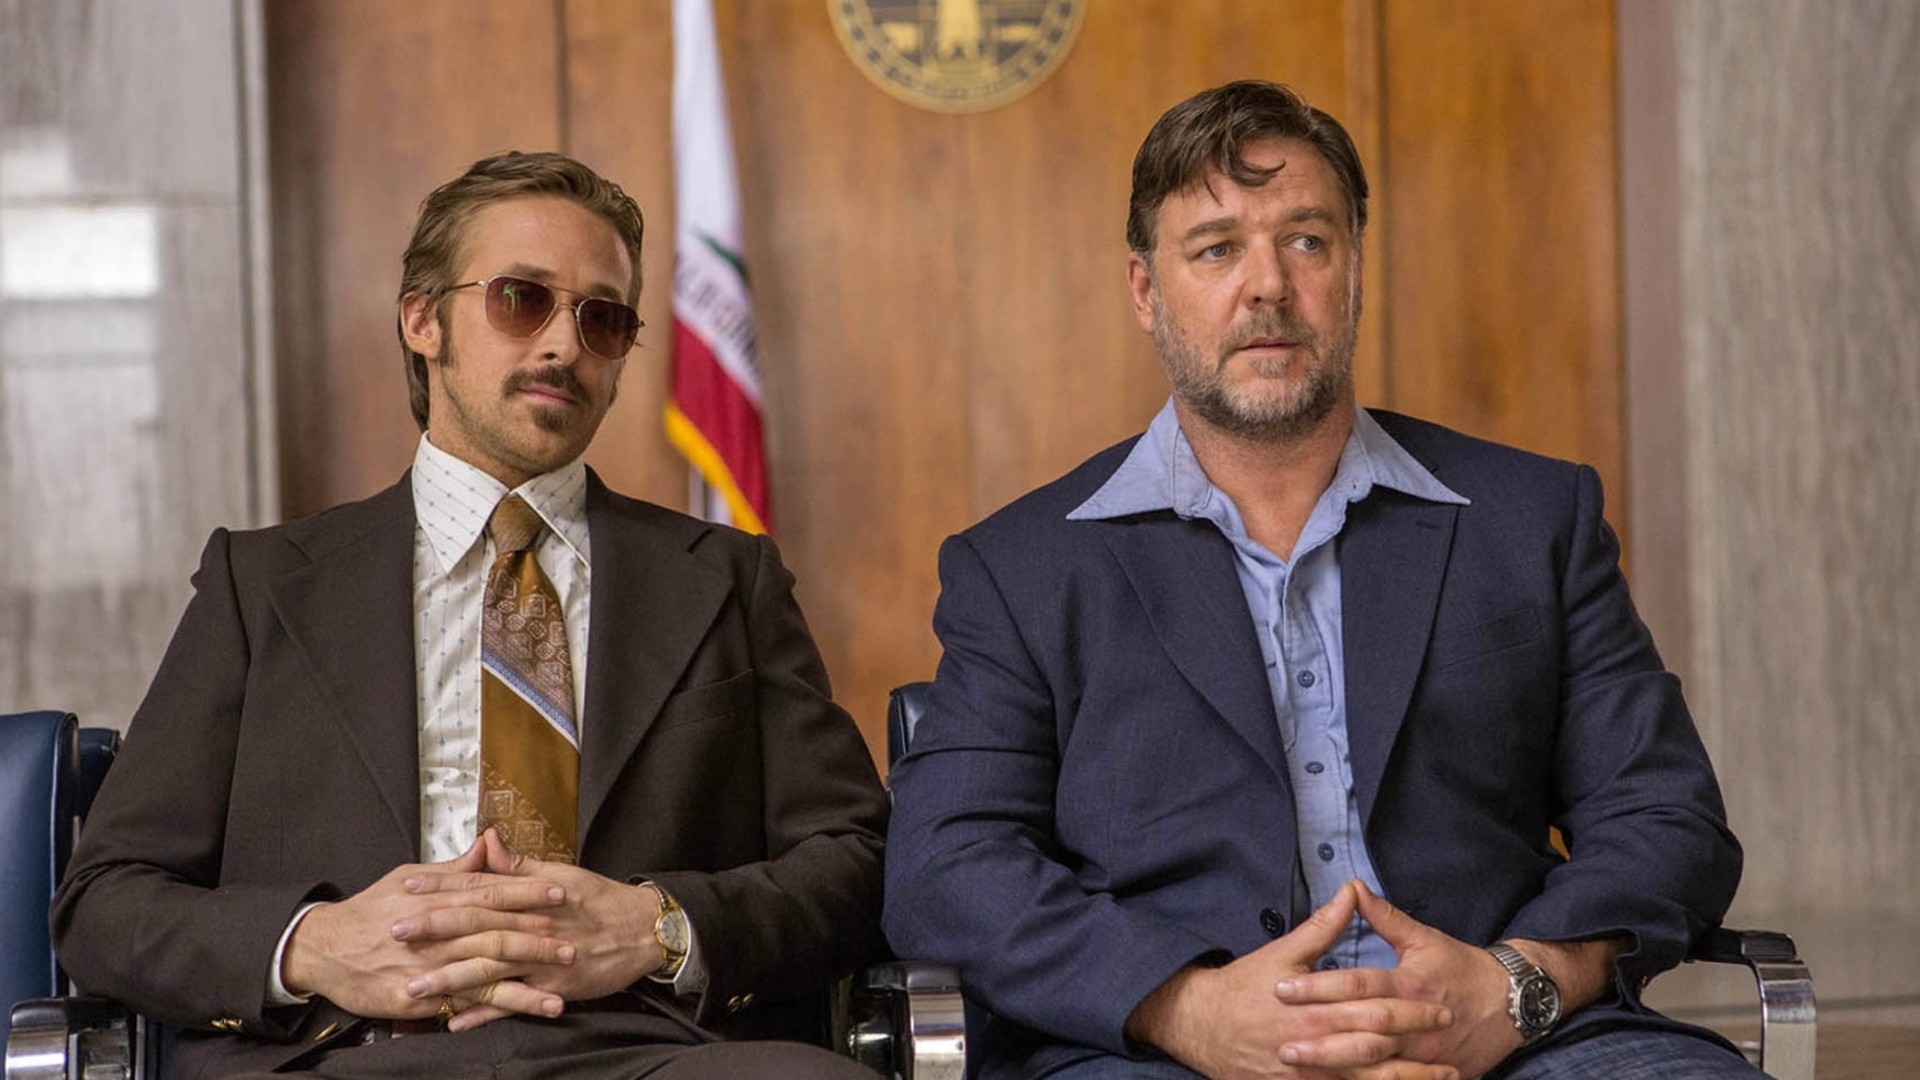 The Nice Guys med Ryan Gosling og Russell Crowe på bildet